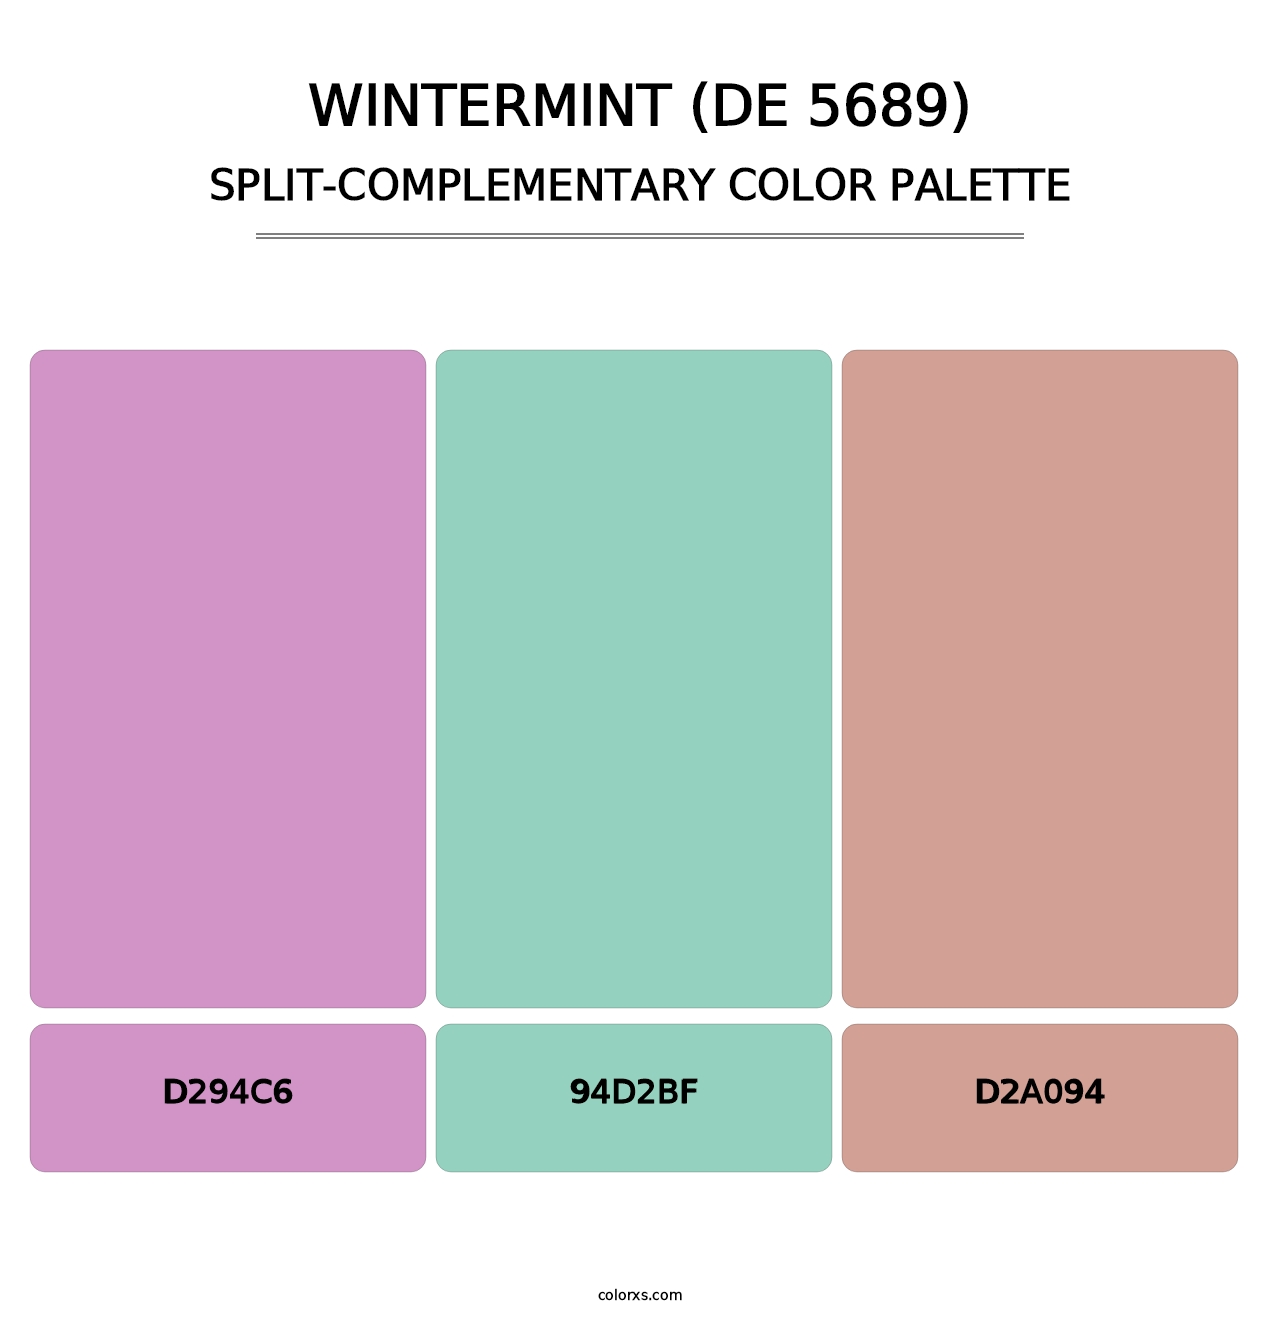 Wintermint (DE 5689) - Split-Complementary Color Palette